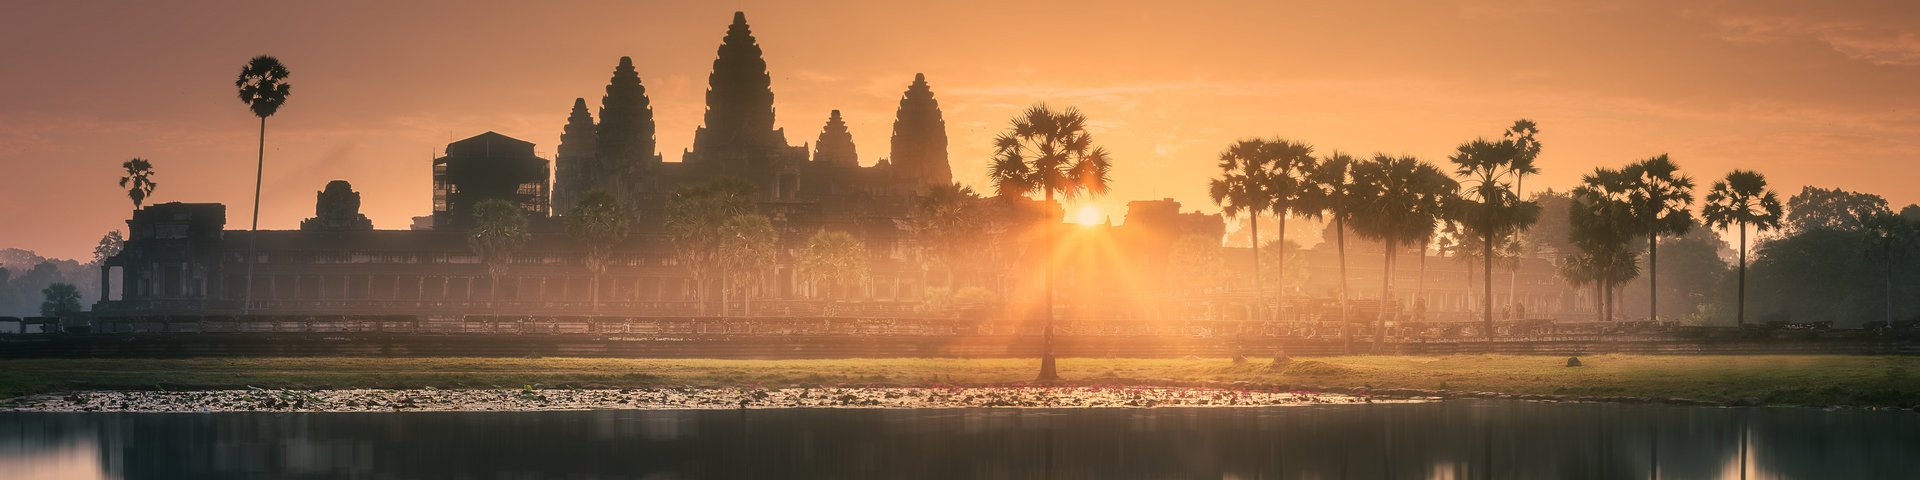 Sonnenaufgang über den Tempelanlagen von Angkor Wat in Kambodscha